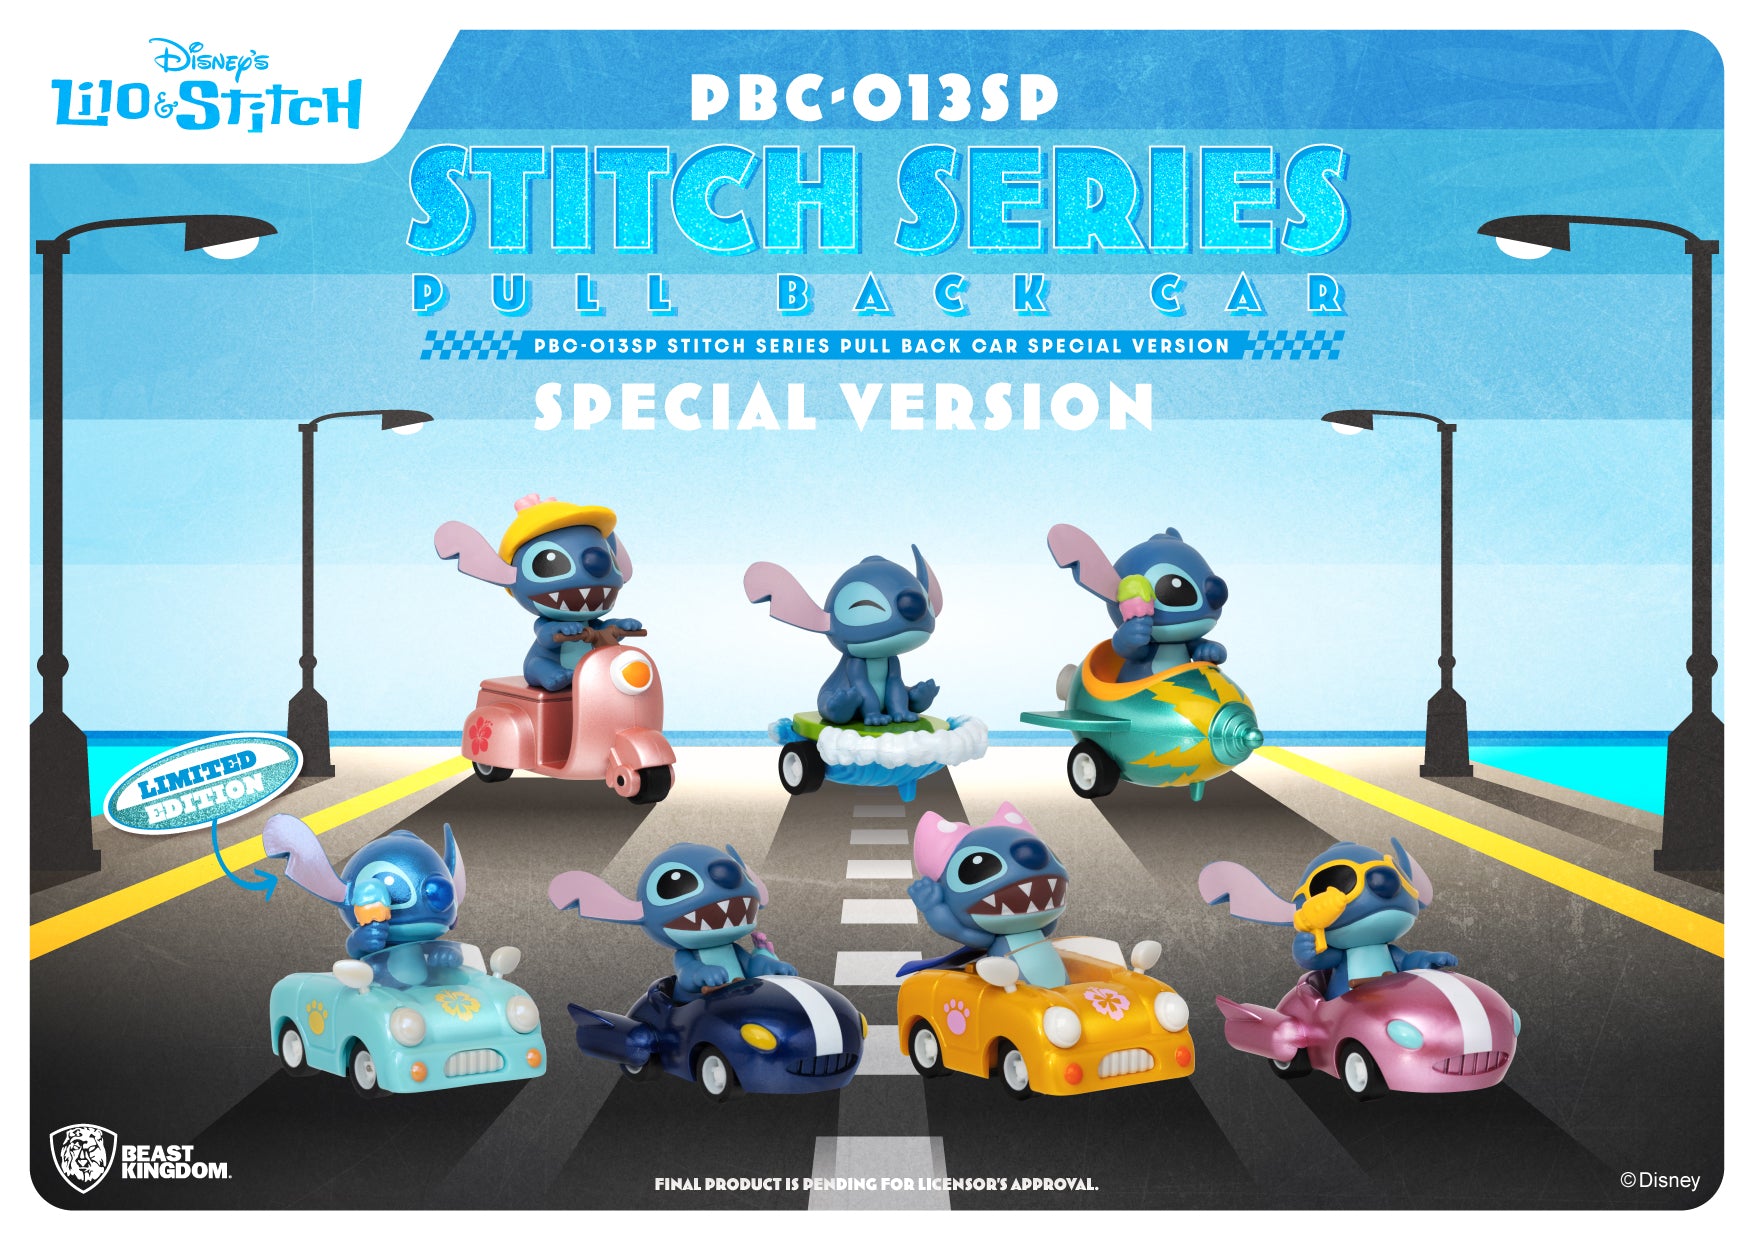 Beast Kingdom PBC-013SP Stitch Series Pull Back Car Special Version Blind box Set(6pcs)